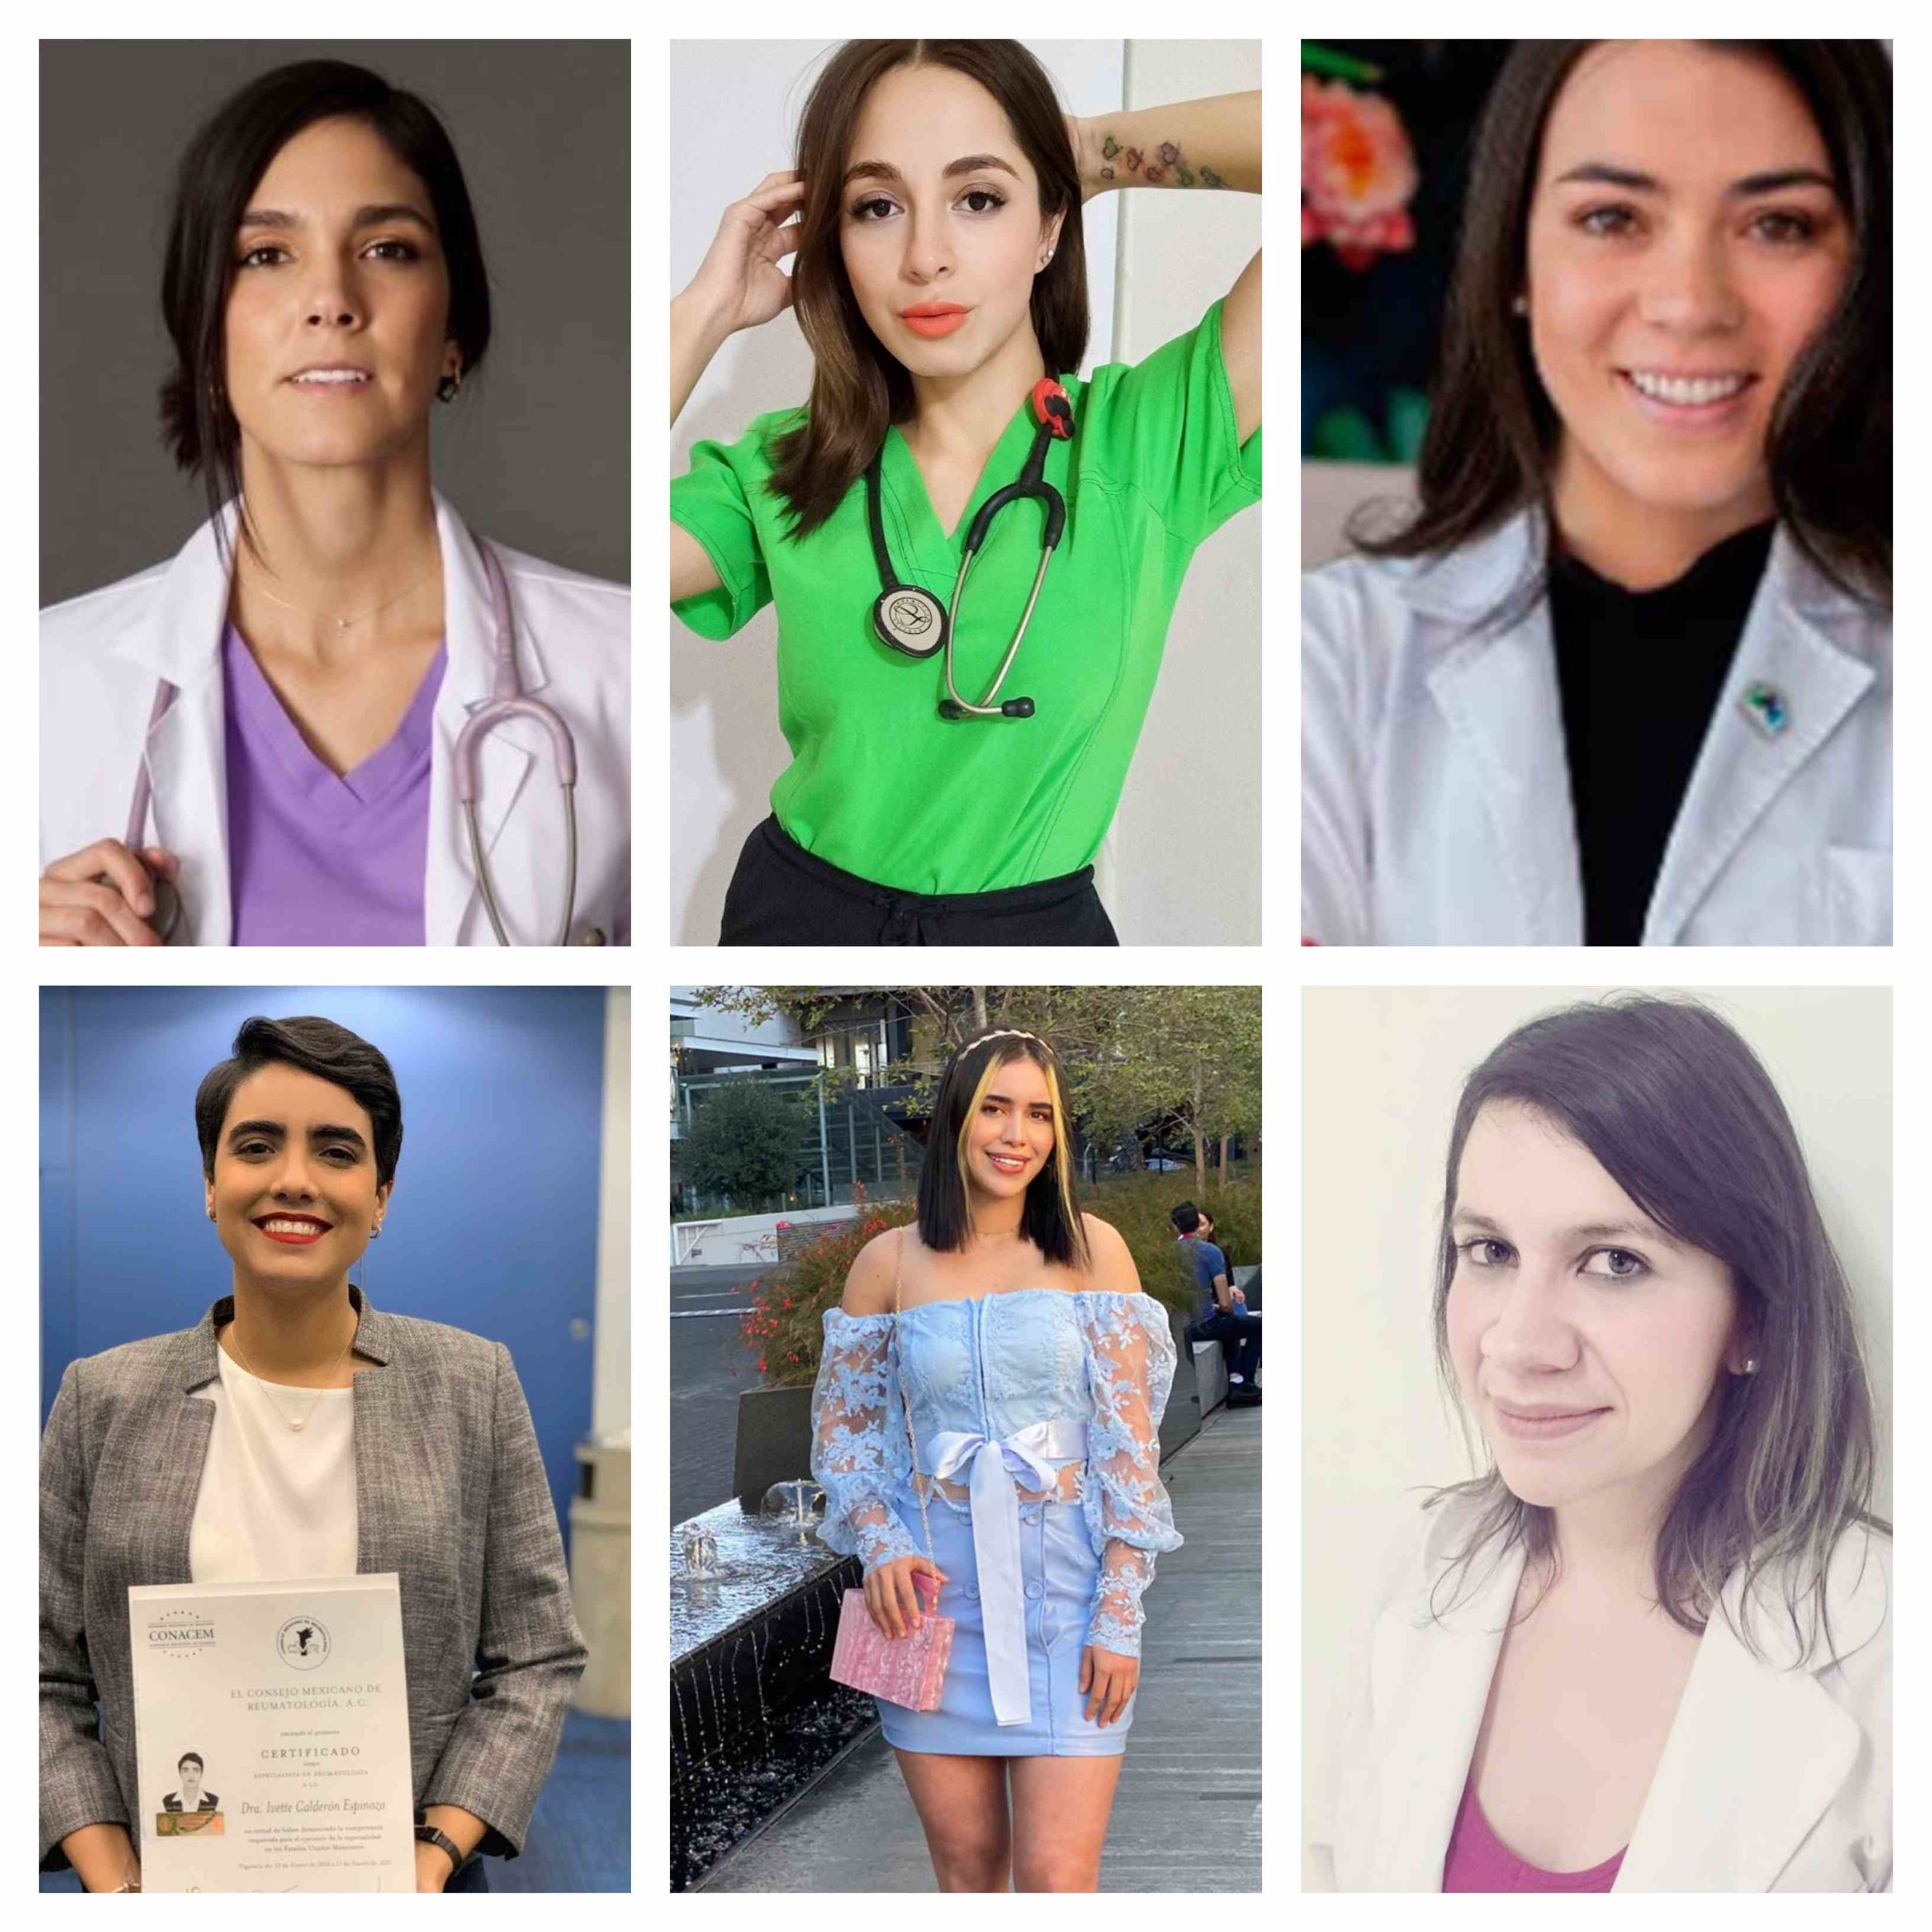 Mes de las Mujeres en la Medicina: 6 jóvenes doctoras mexicanas a seguir